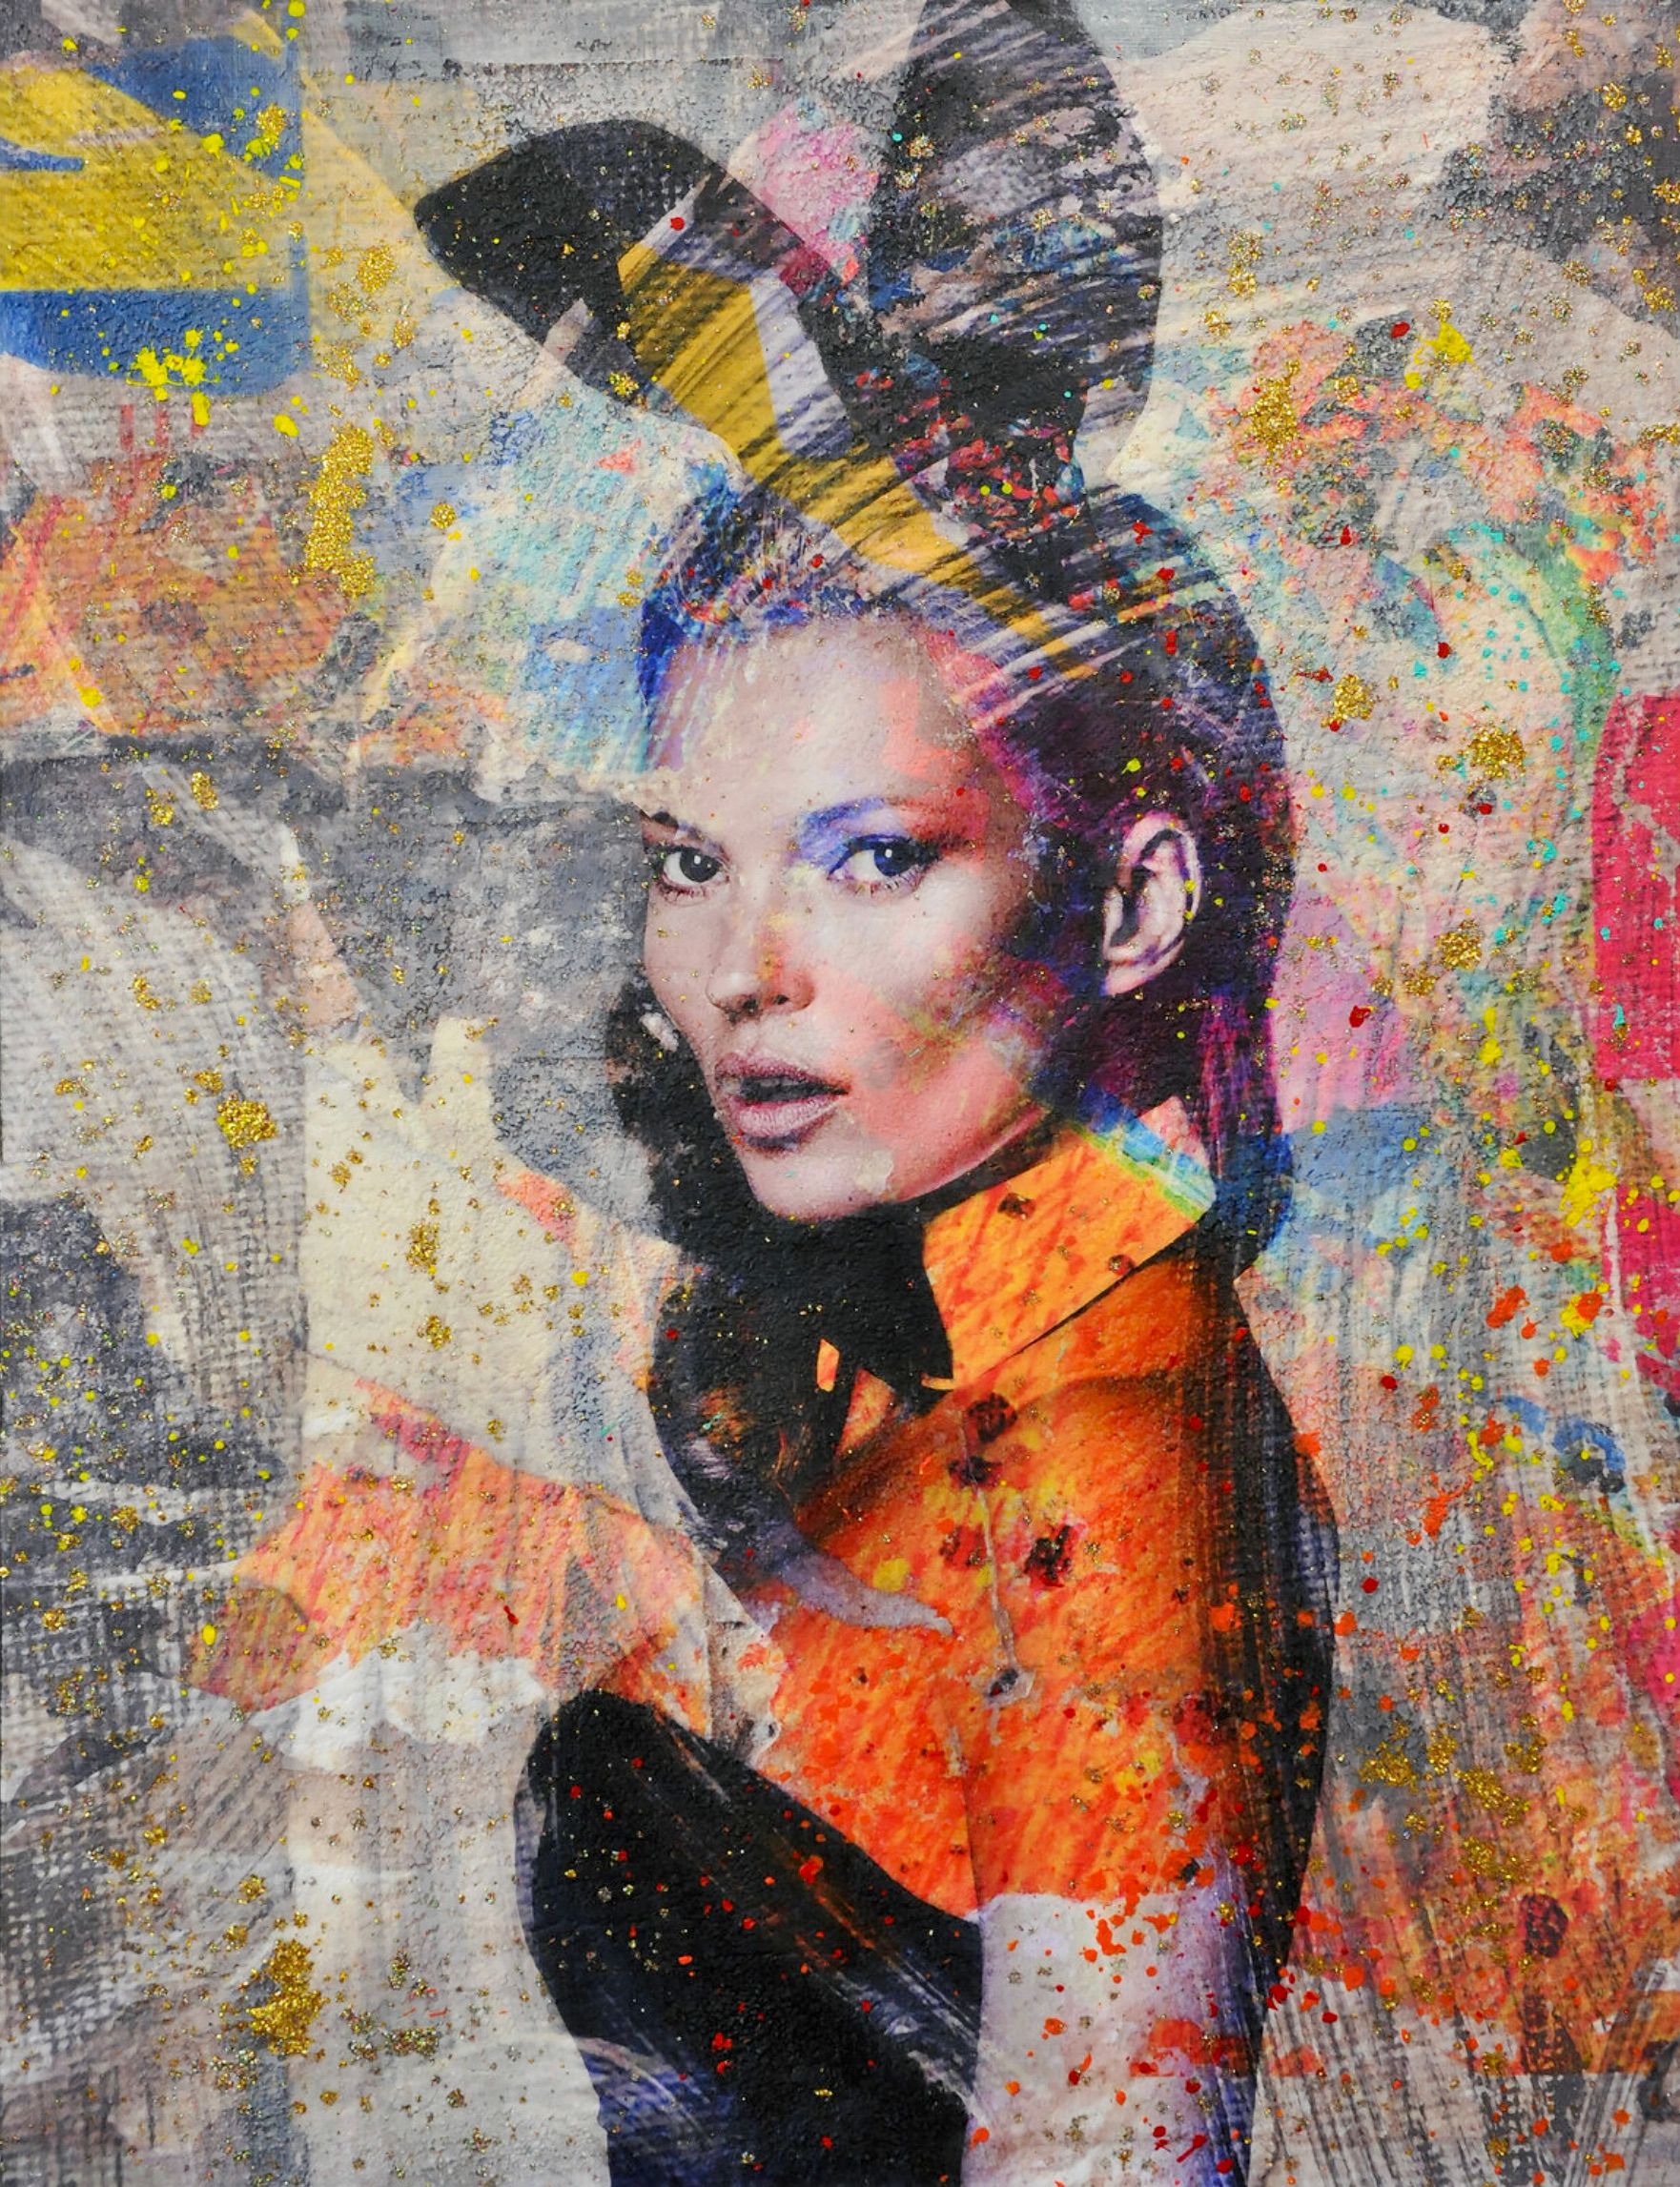 Karin Vermeer的 "Bunny Kate "是对照片、绘画和拼贴画的数字组合和处理，成为新的、原创的彩色街头艺术作品。